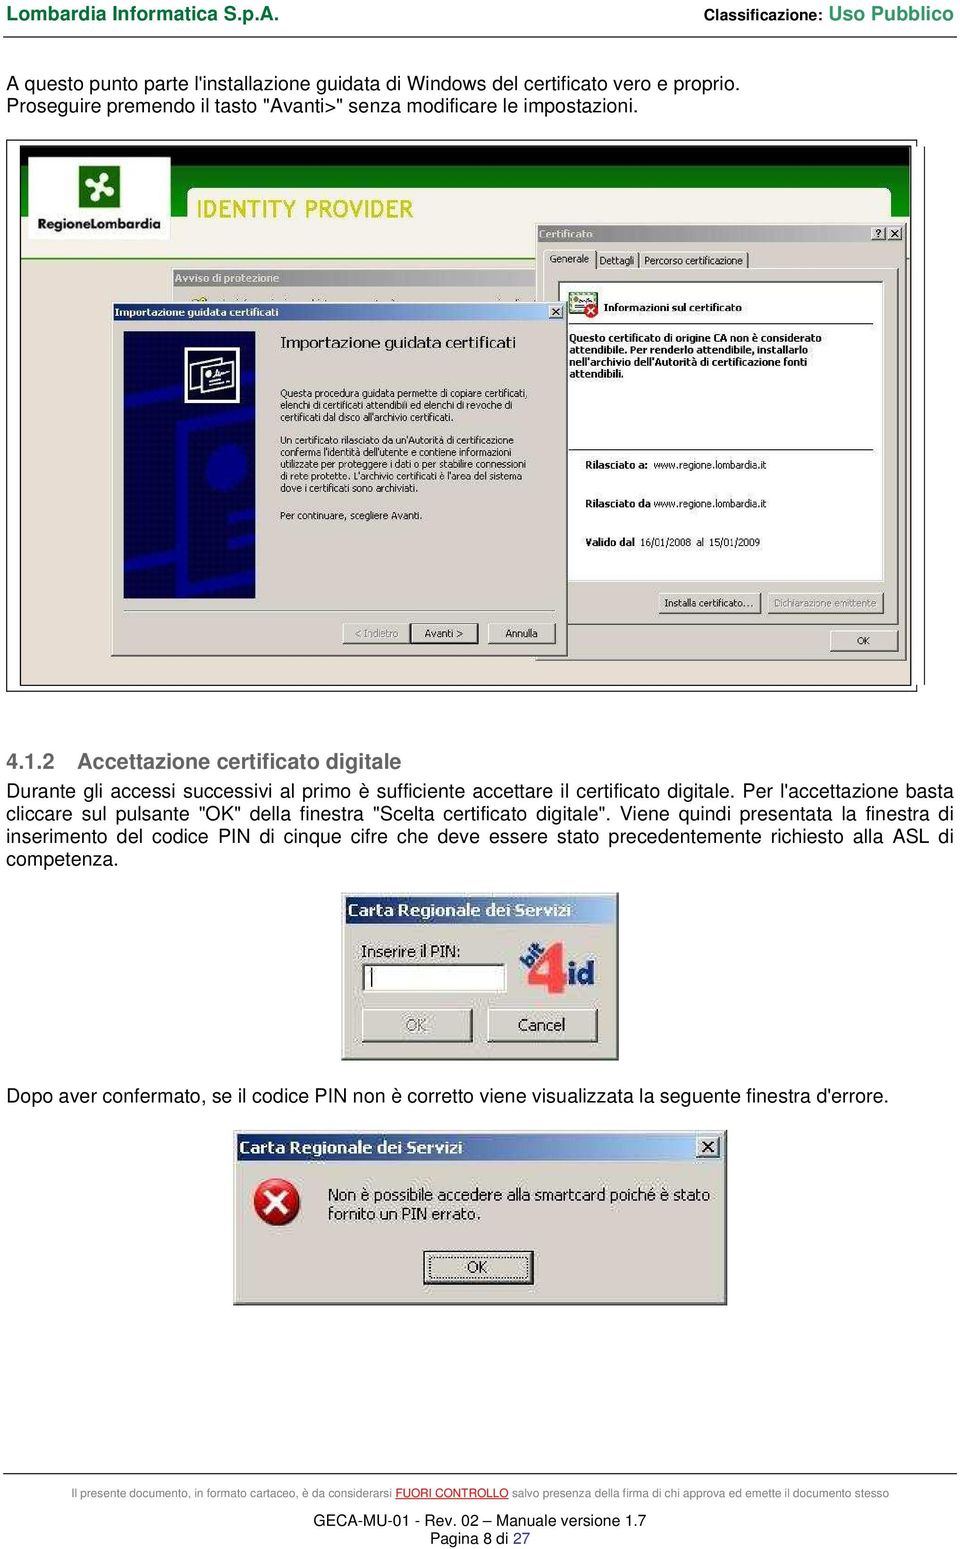 Per l'accettazione basta cliccare sul pulsante "OK" della finestra "Scelta certificato digitale".